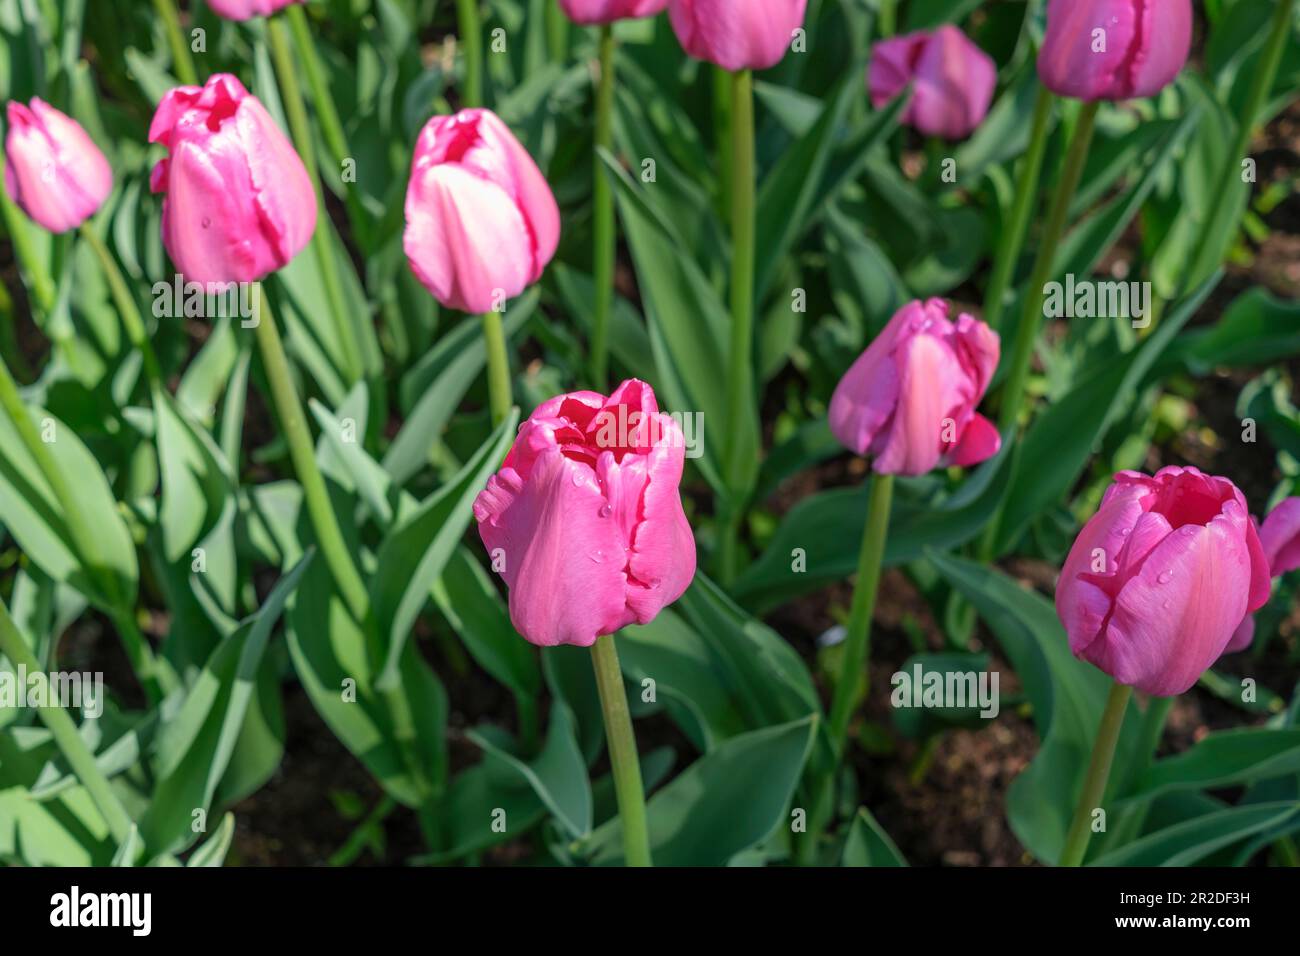 Tulipes violettes avec gouttes de pluie sur les pétales Banque D'Images